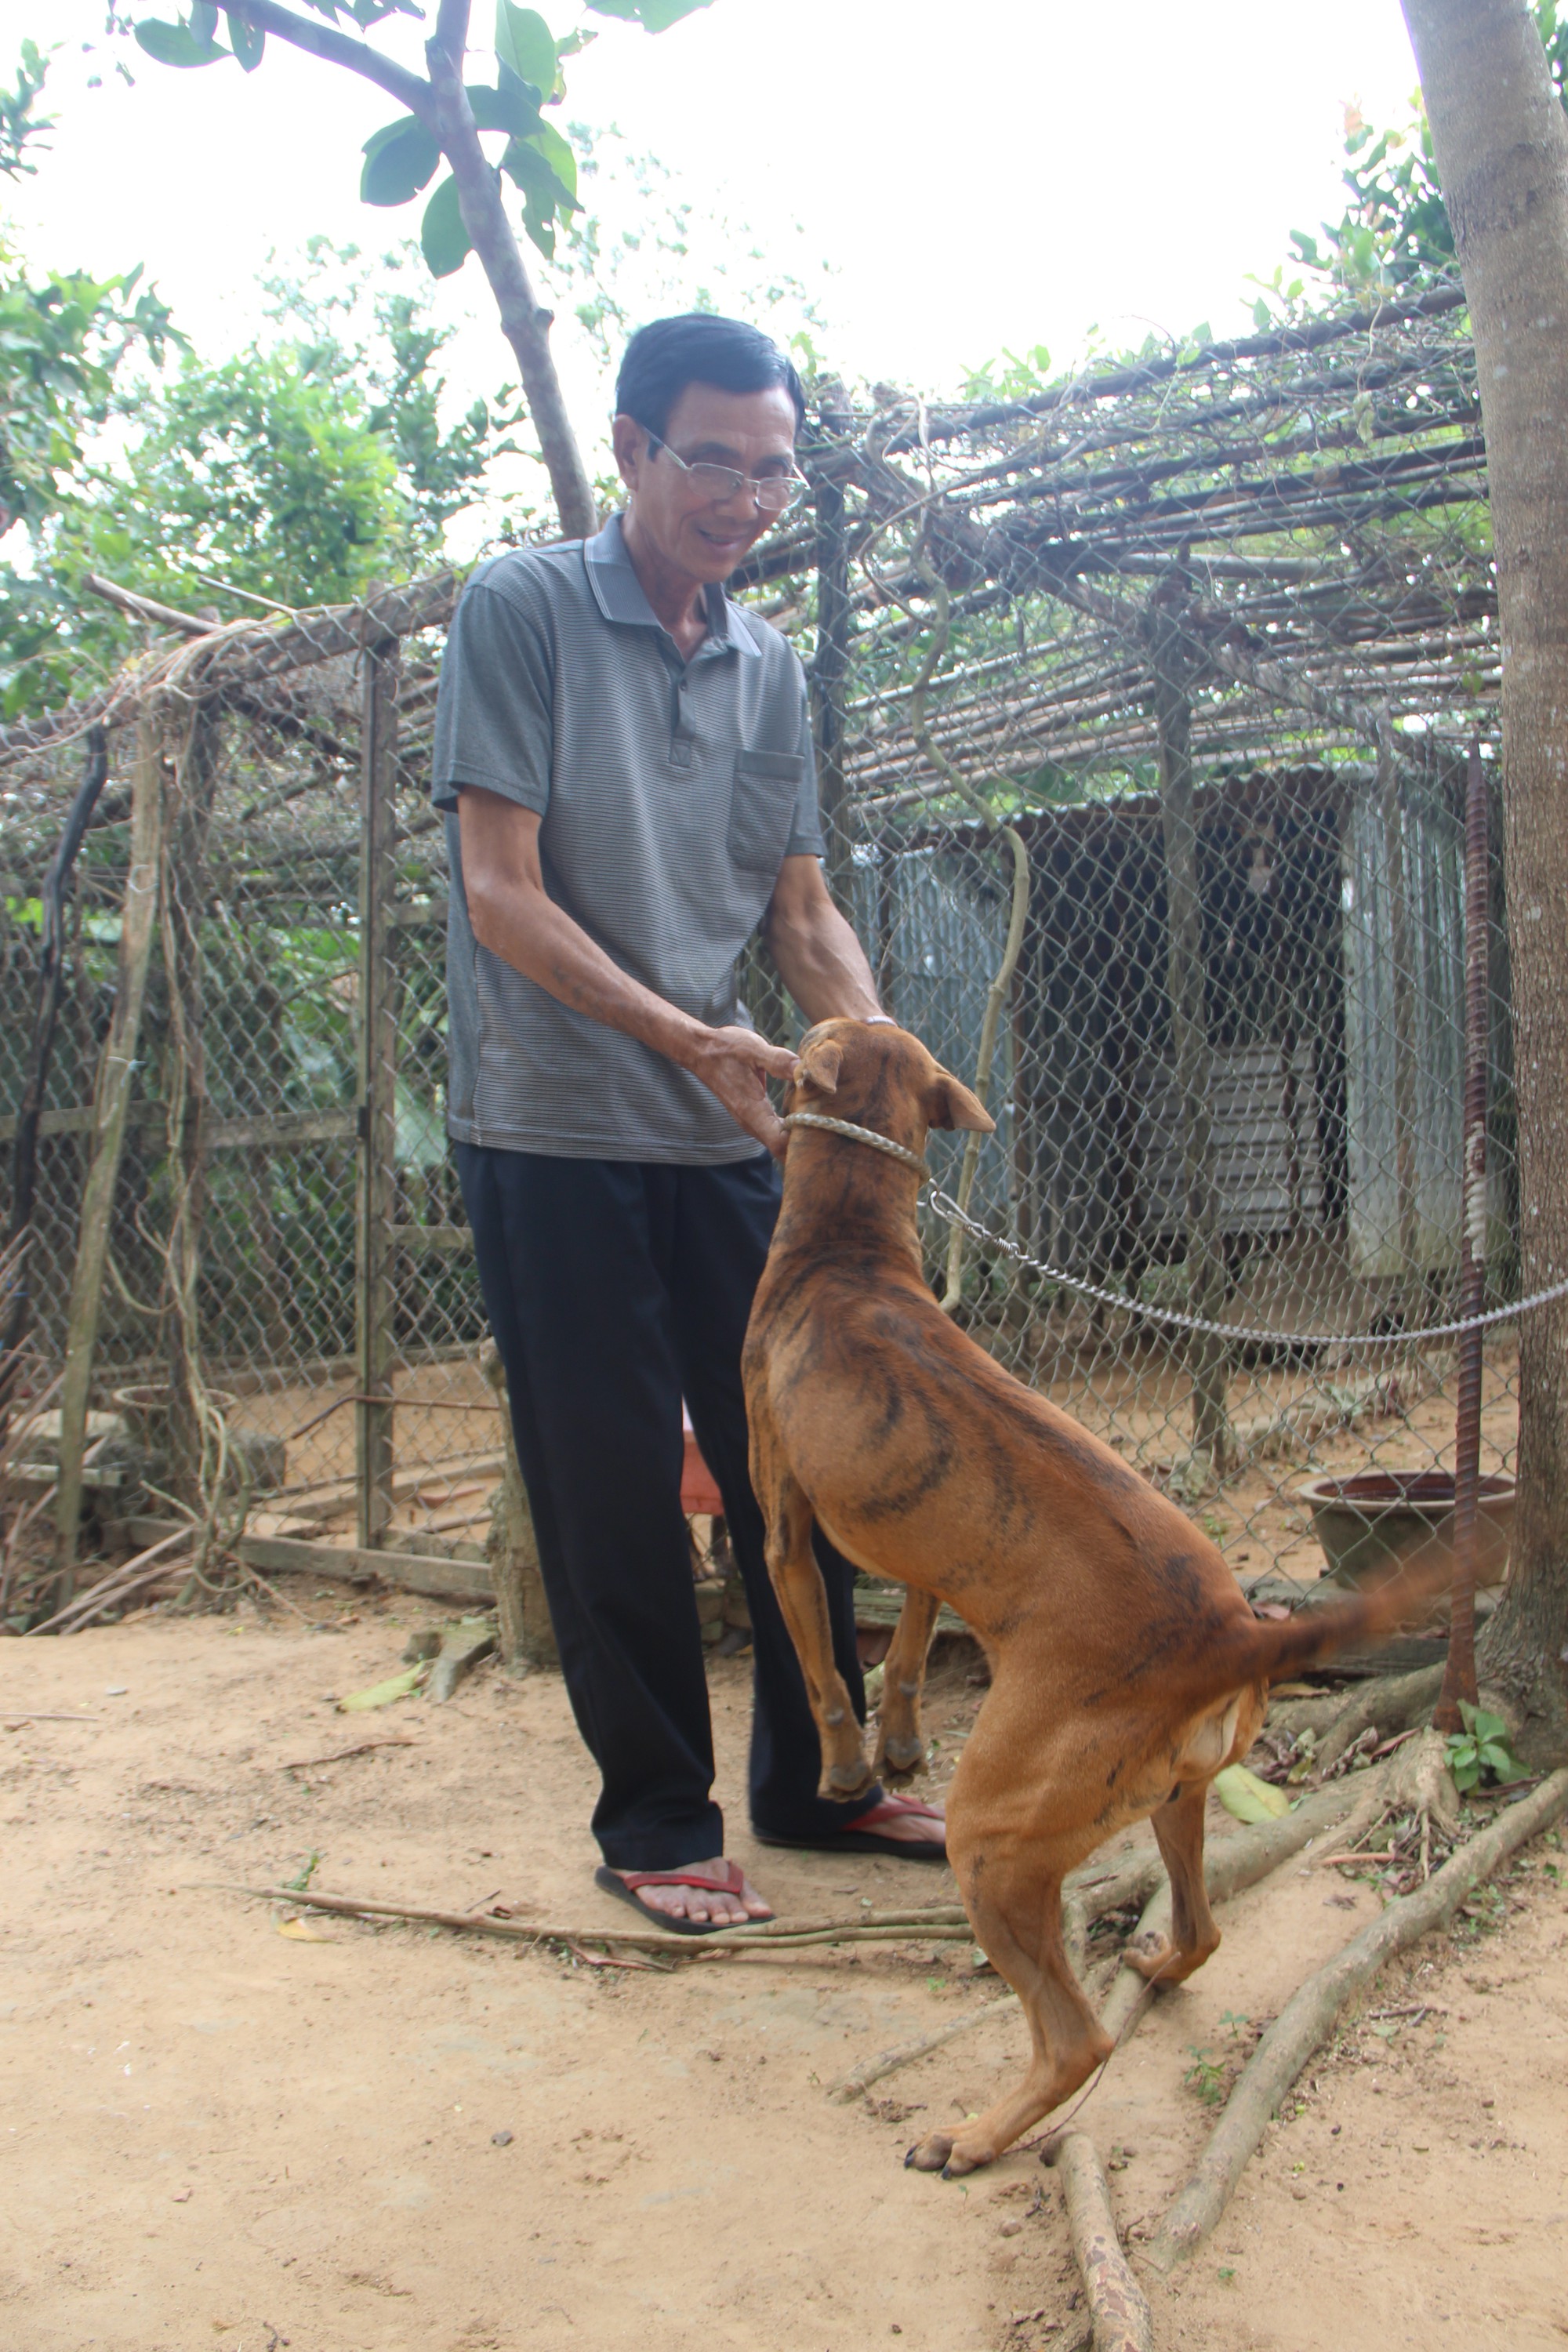 Chó xoáy Phú Quốc: Với đôi tai và bộ lông xoáy bắt mắt, chó xoáy Phú Quốc là một trong những giống chó đẹp nhất và độc đáo nhất tại Việt Nam. Hoàn toàn có thể thấy rằng giống chó này đang trở thành sự lựa chọn yêu thích của nhiều người yêu thú cưng.